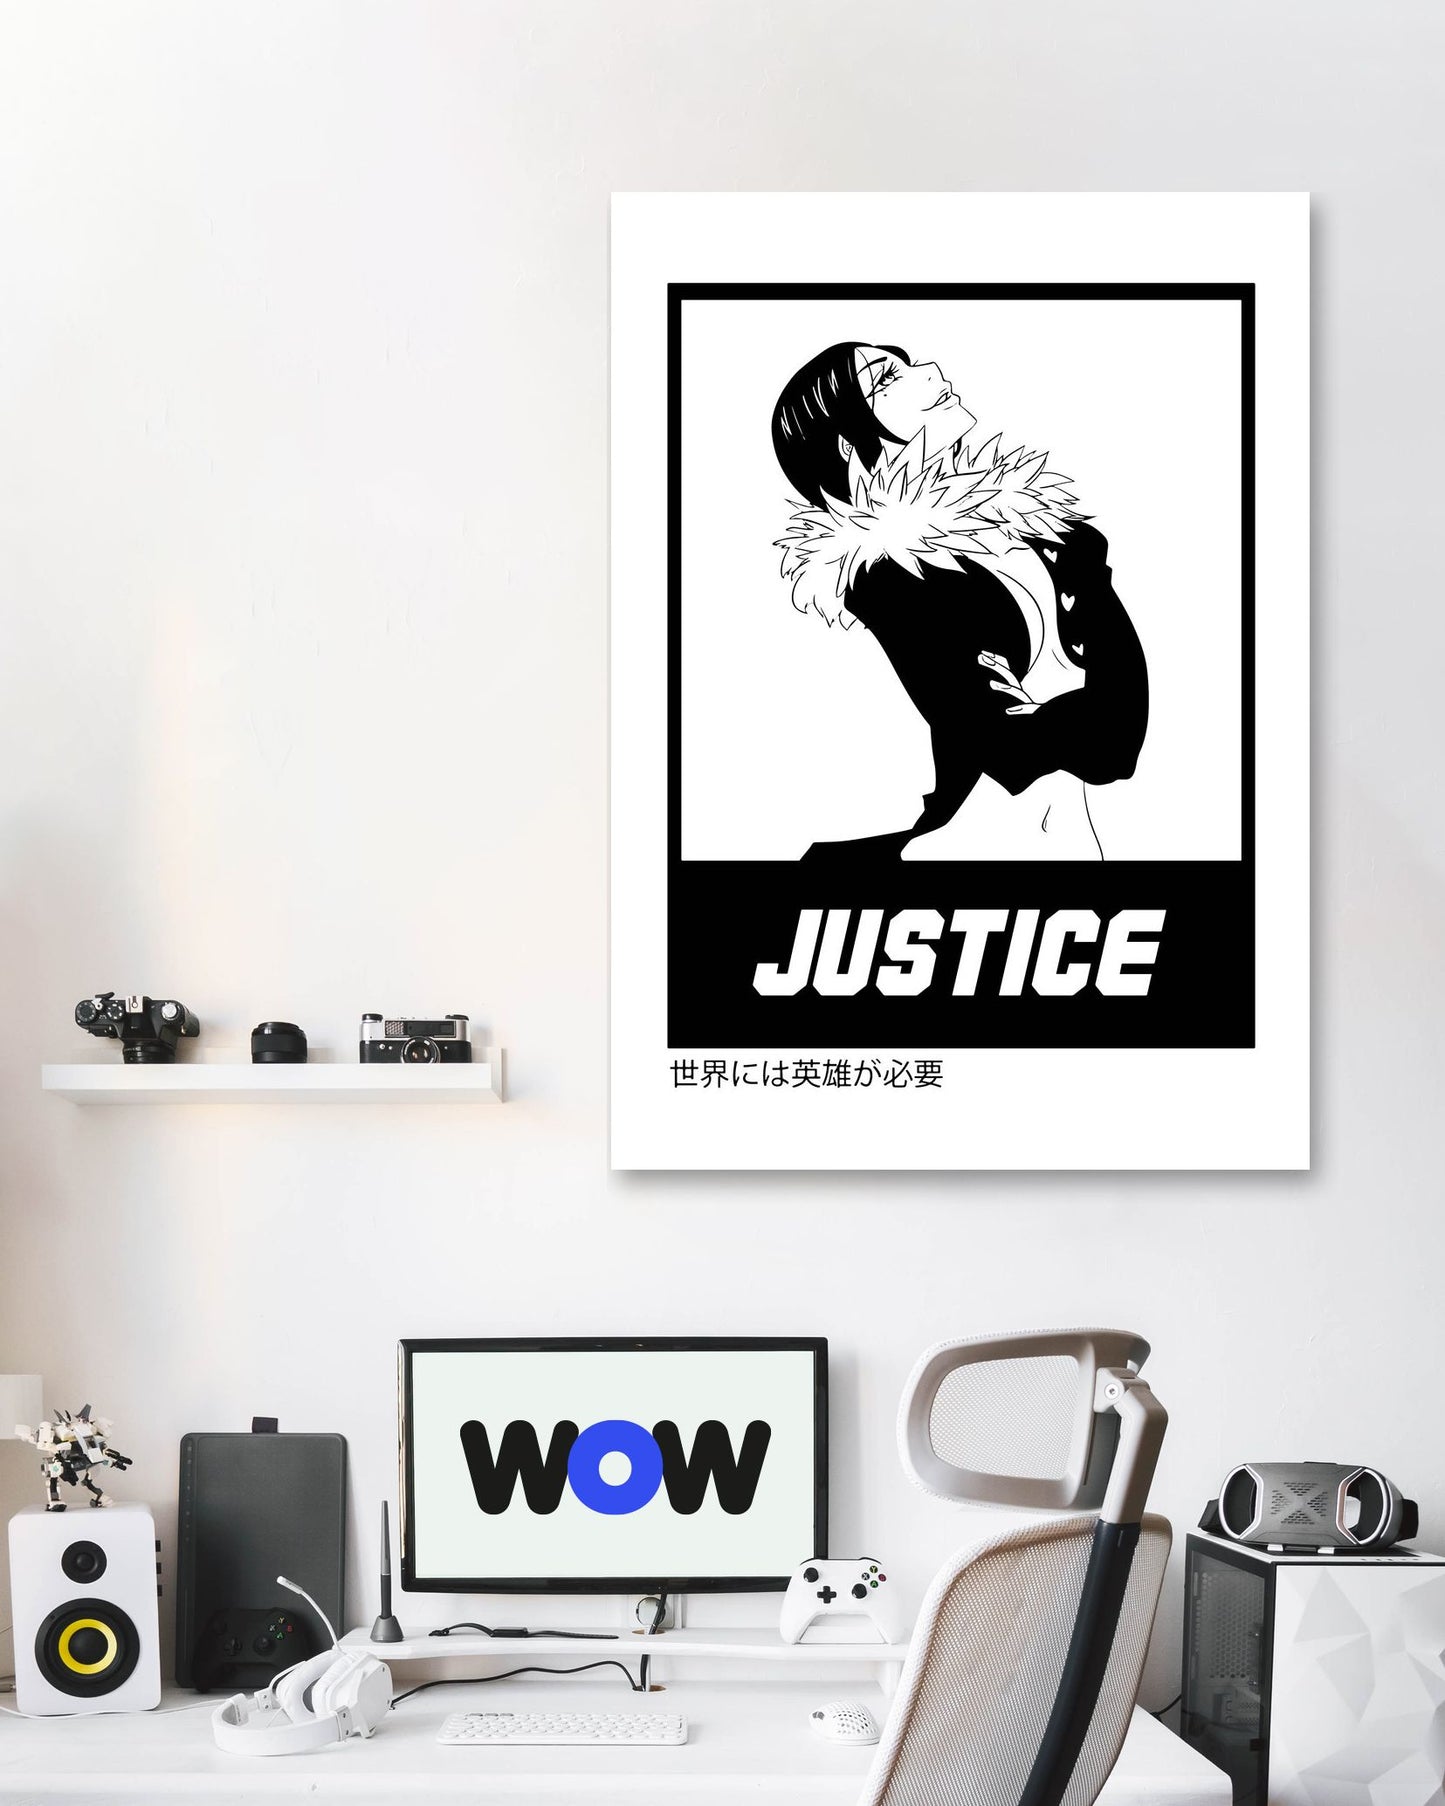 Justice 16 - @FreakCreator